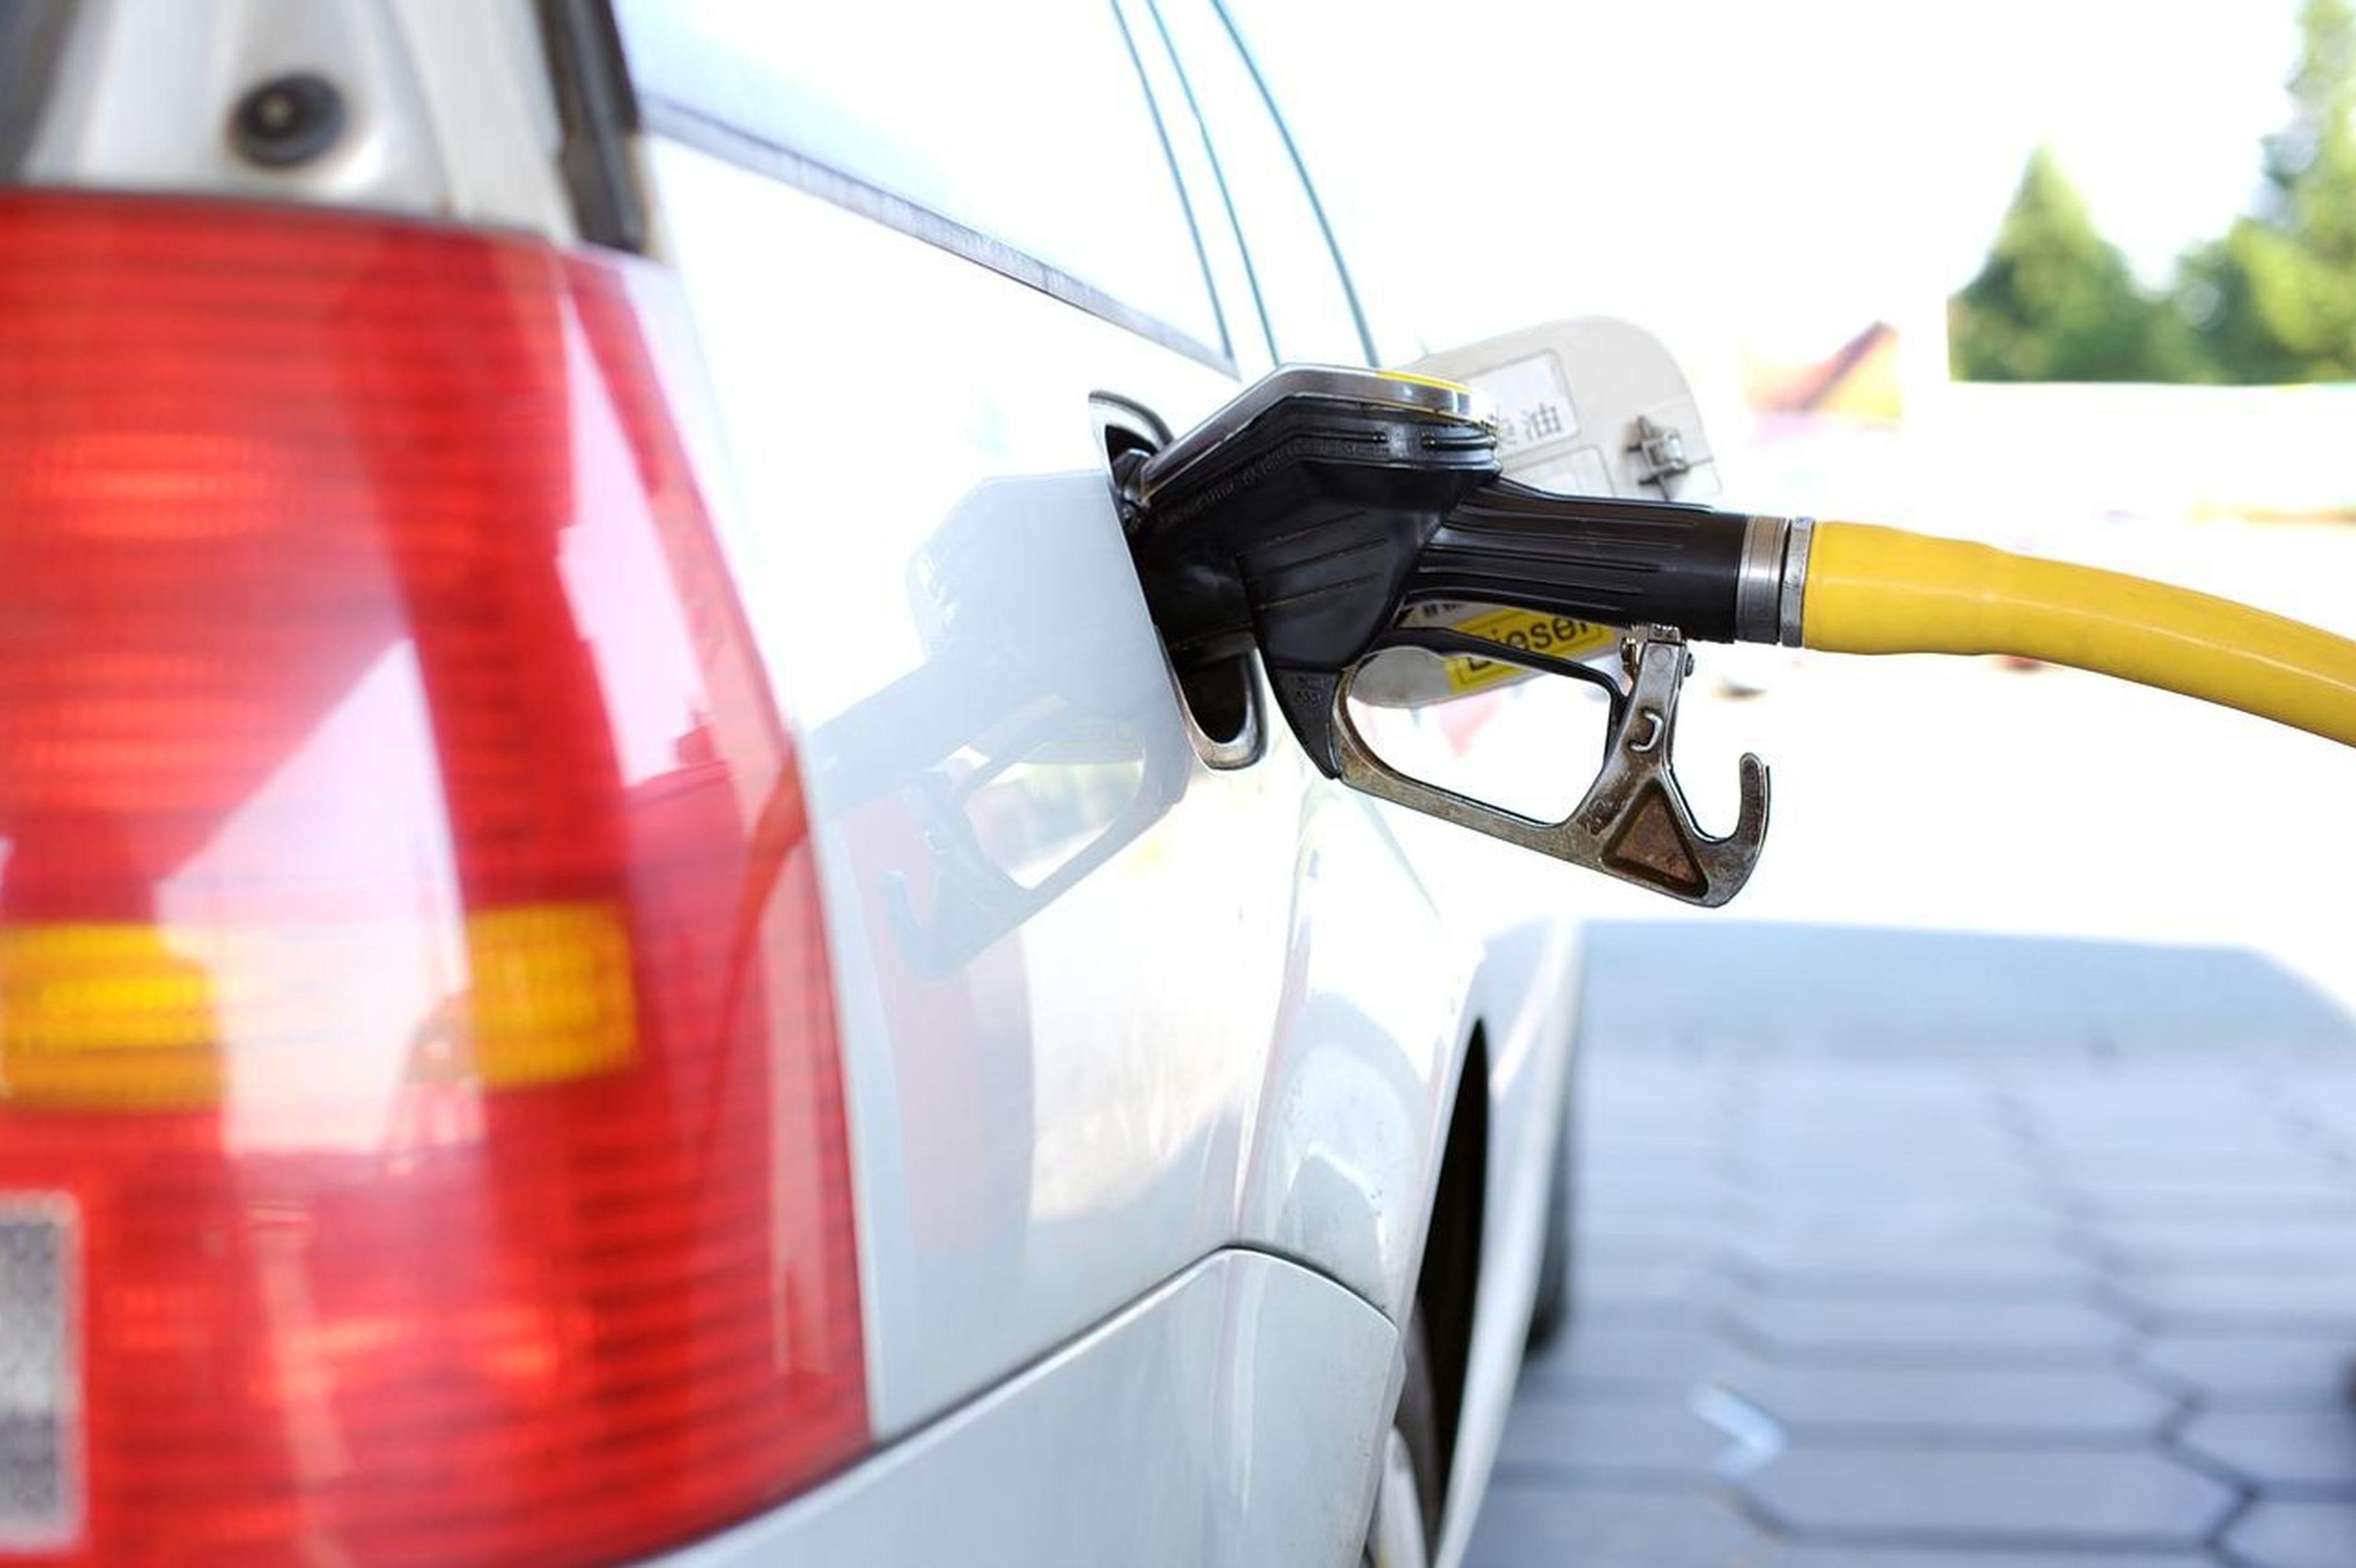 Las gasolineras aumentaron casi un 24% los márgenes del diésel